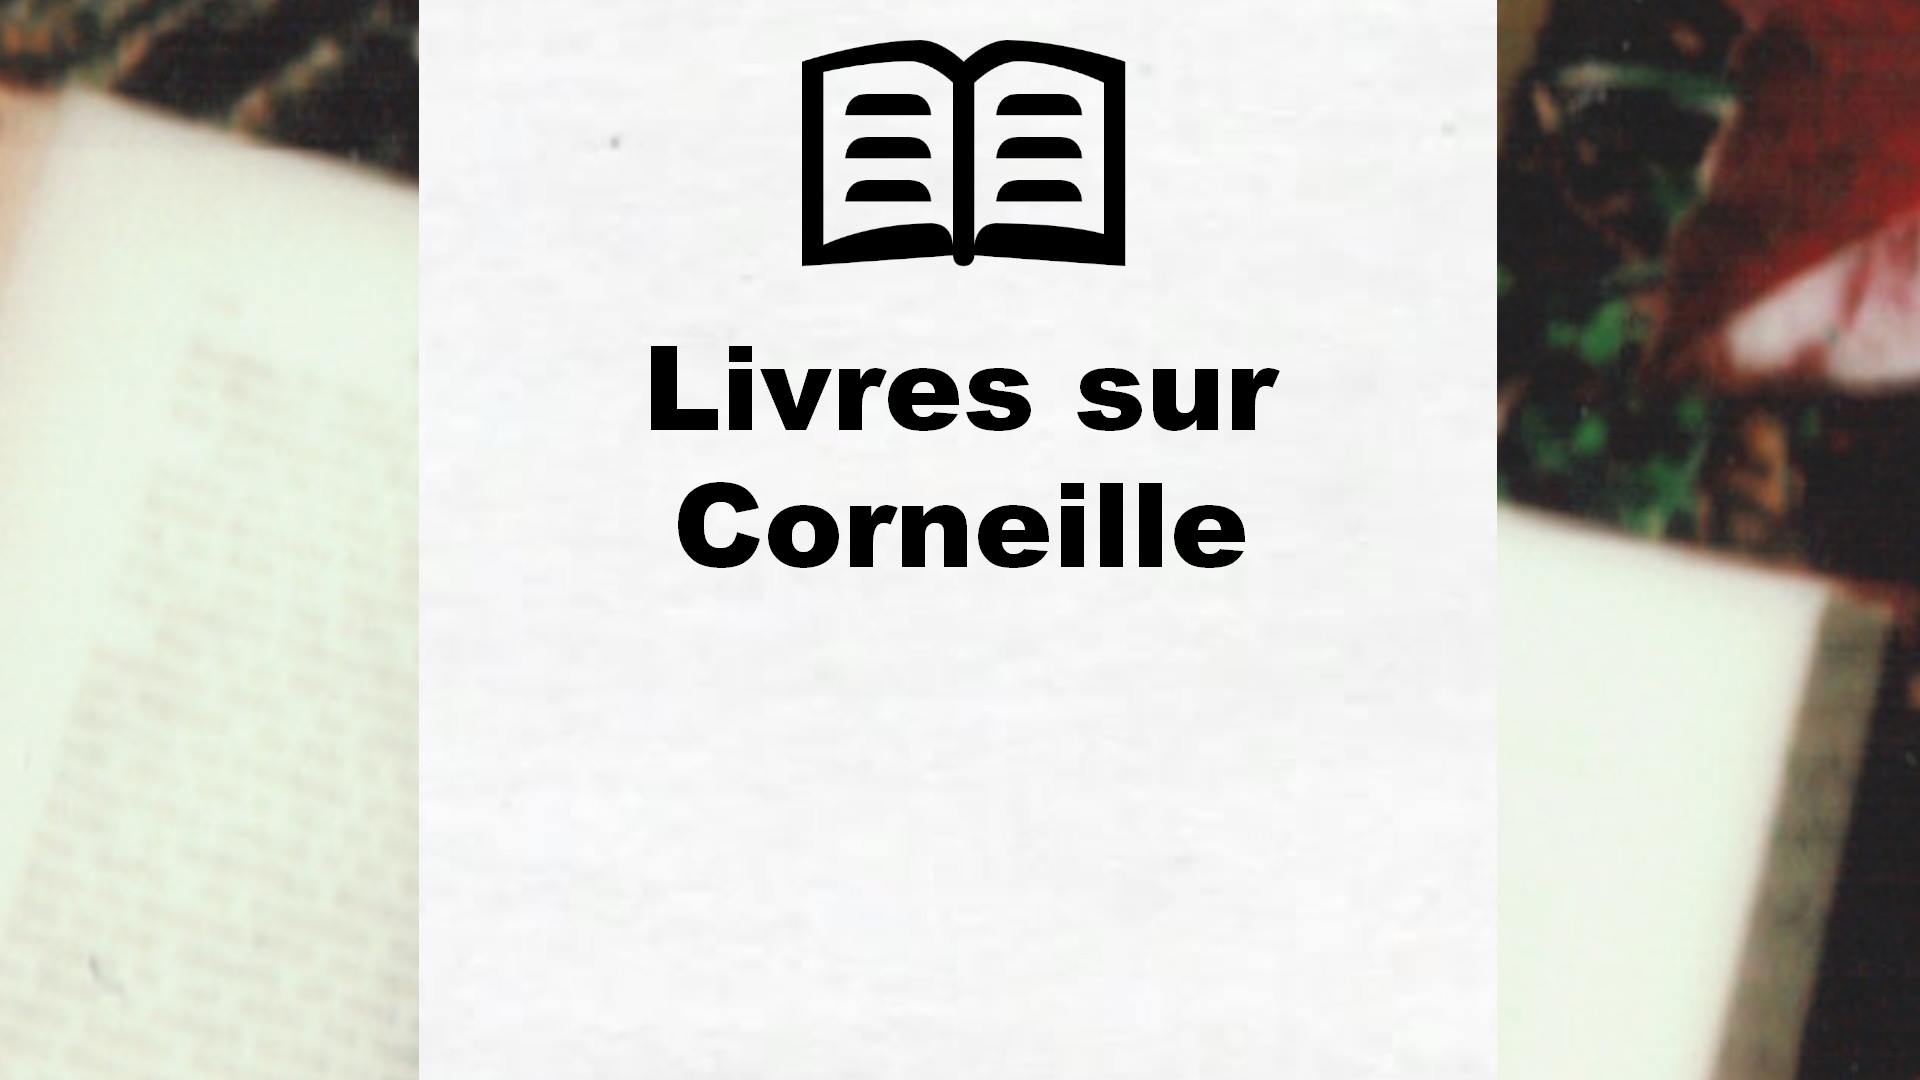 Livres sur Corneille